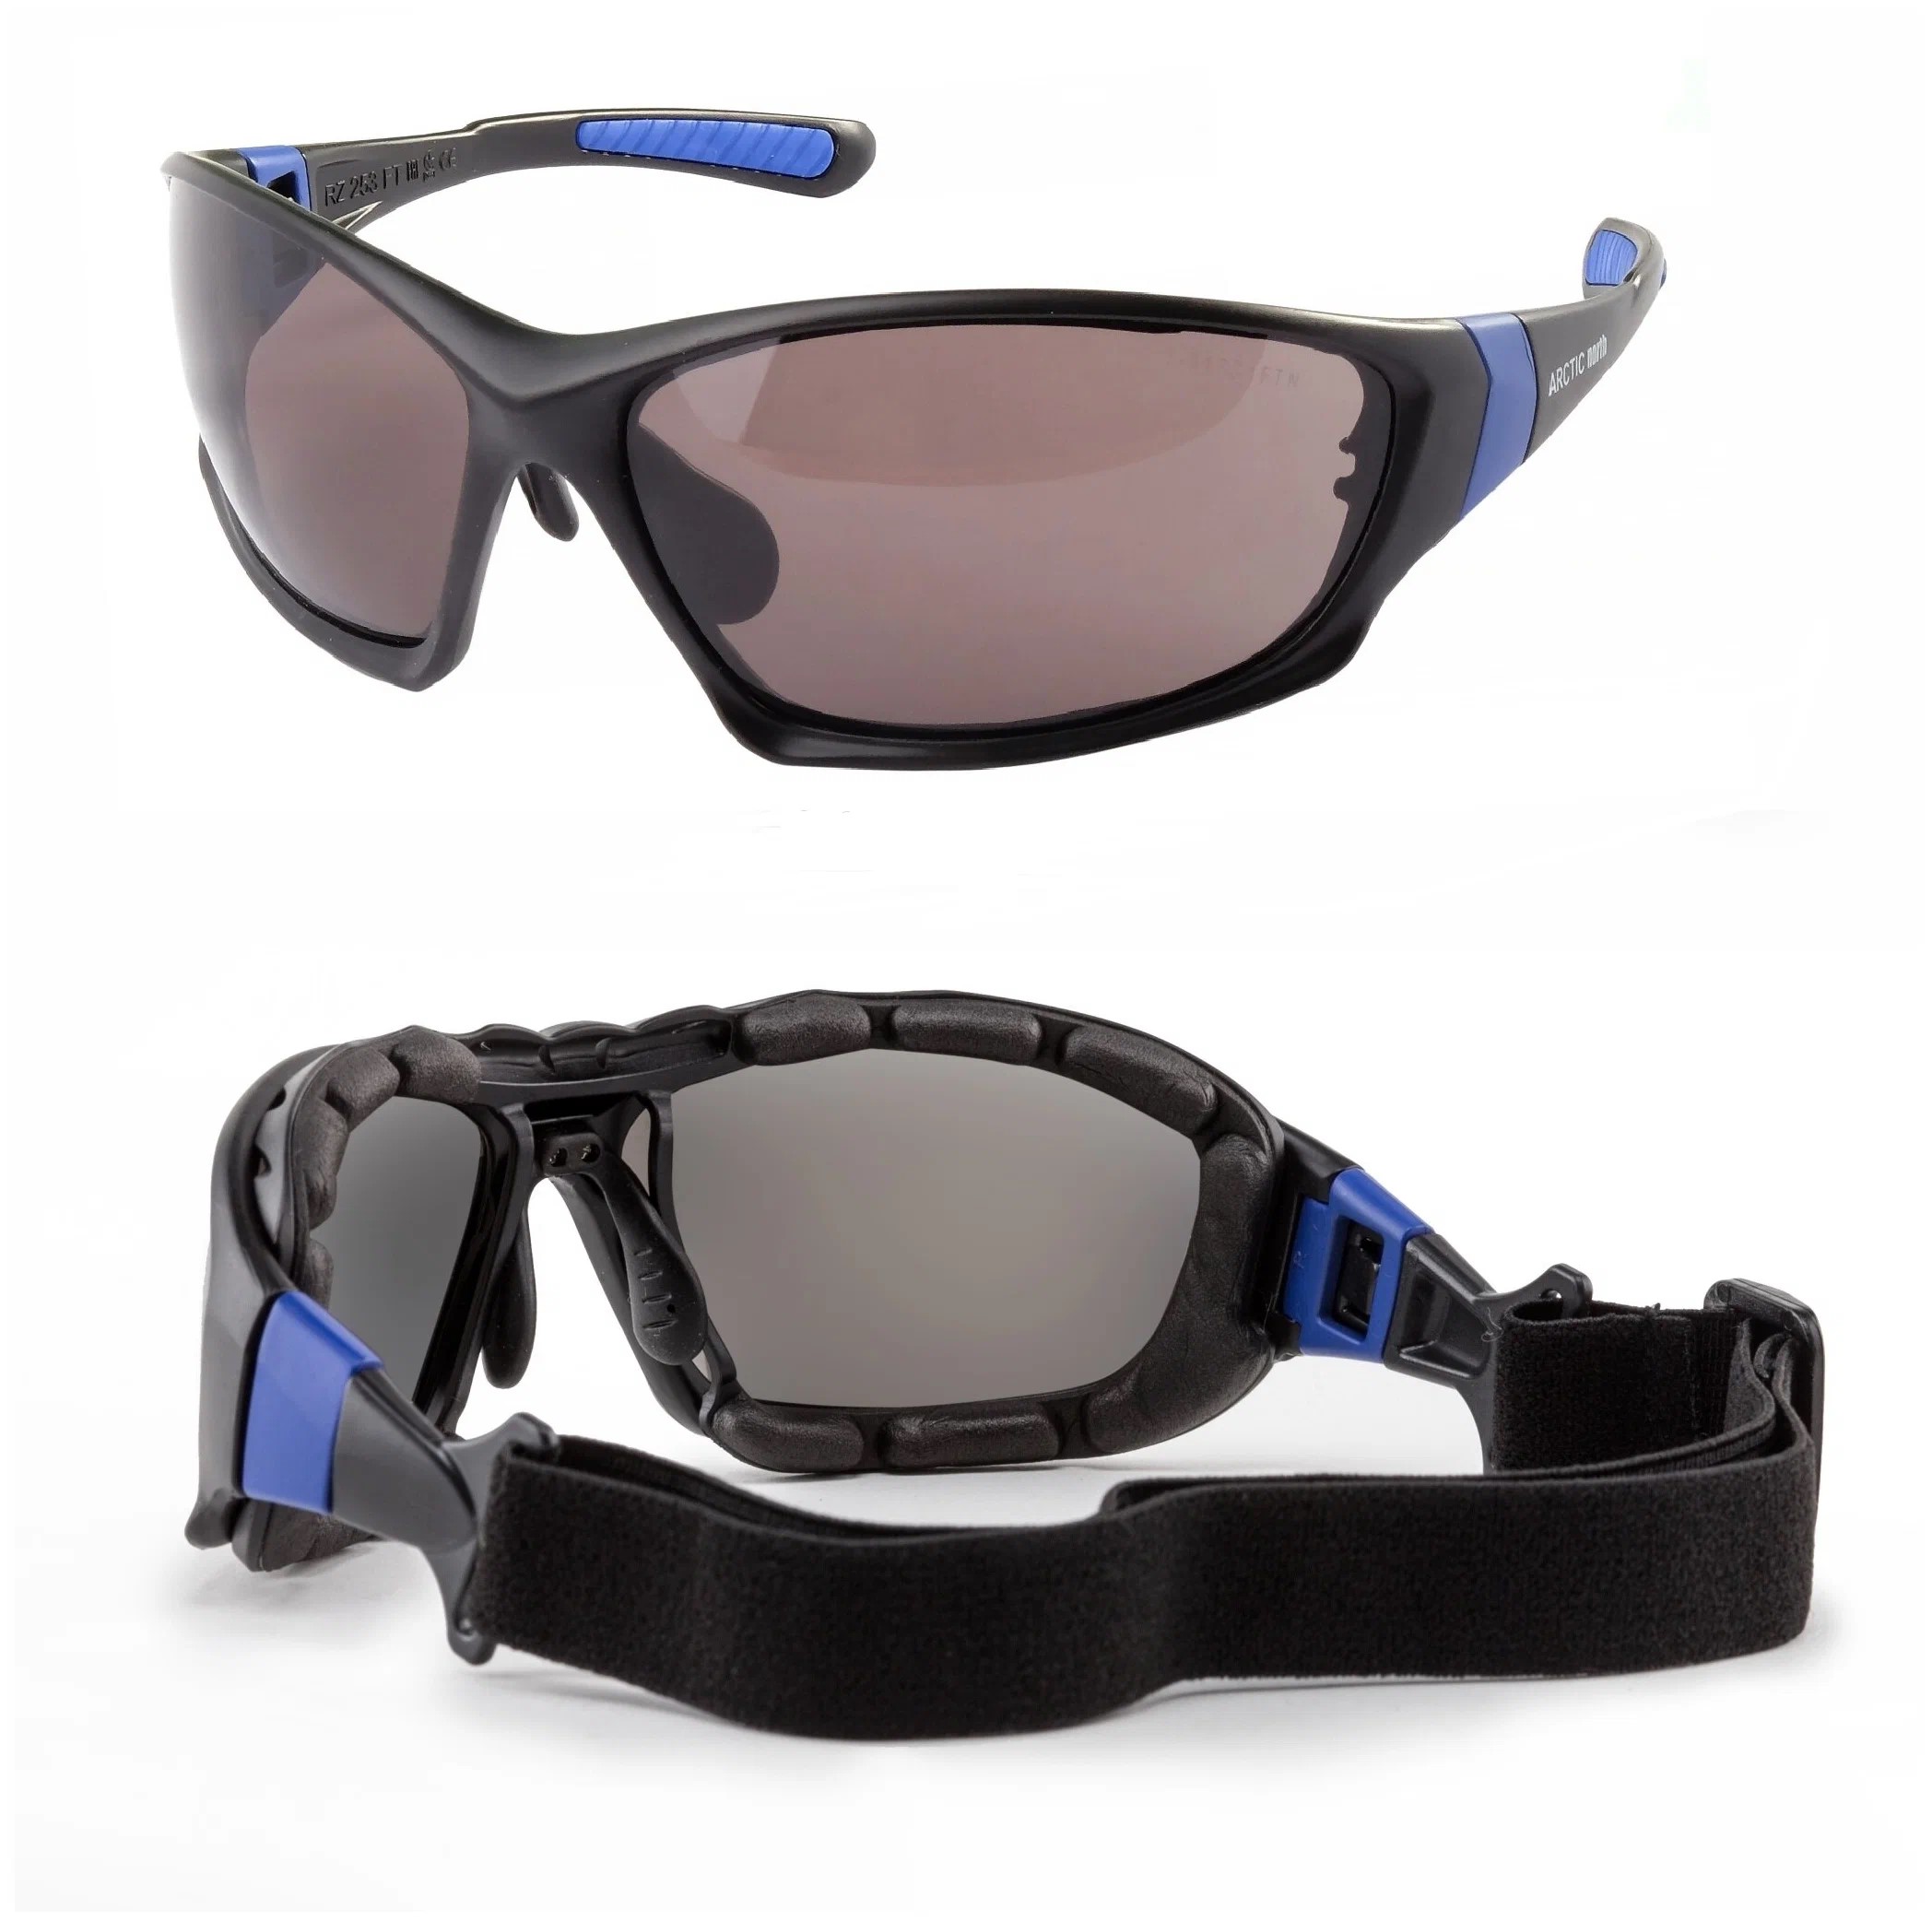 Очки защитные, спортивные, альпинистские РОСОМЗ ARCTIC north солнцезащитные, 38629 очки спортивные